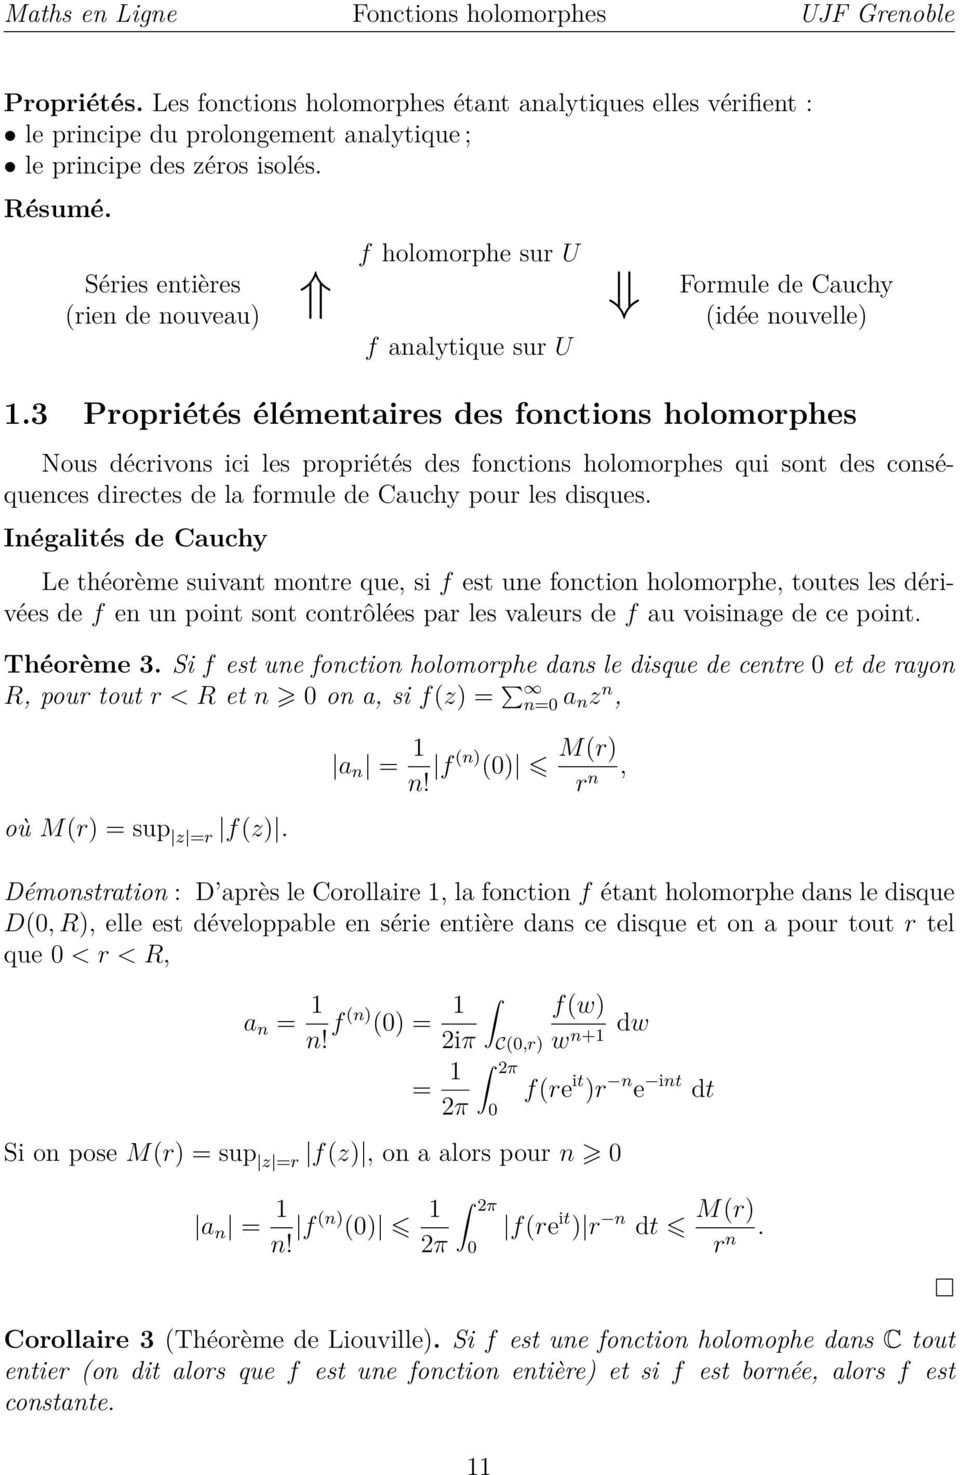 3 Propriétés élémentaires des fonctions holomorphes Nous décrivons ici les propriétés des fonctions holomorphes qui sont des conséquences directes de la formule de Cauchy pour les disques.